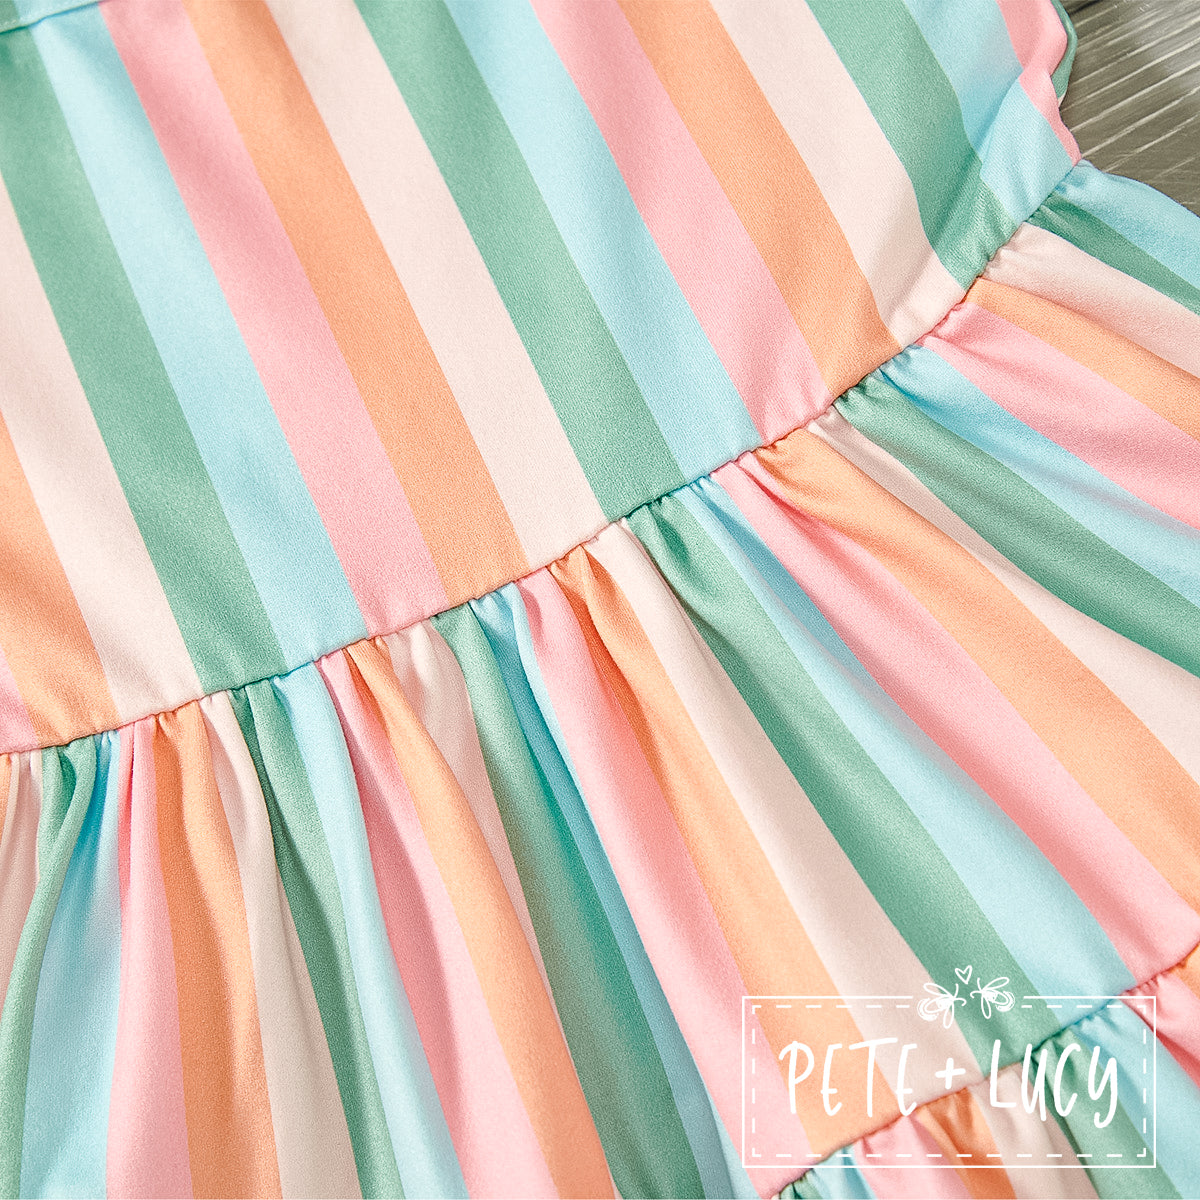 Summertime: Simply Stripes - Girl Dress